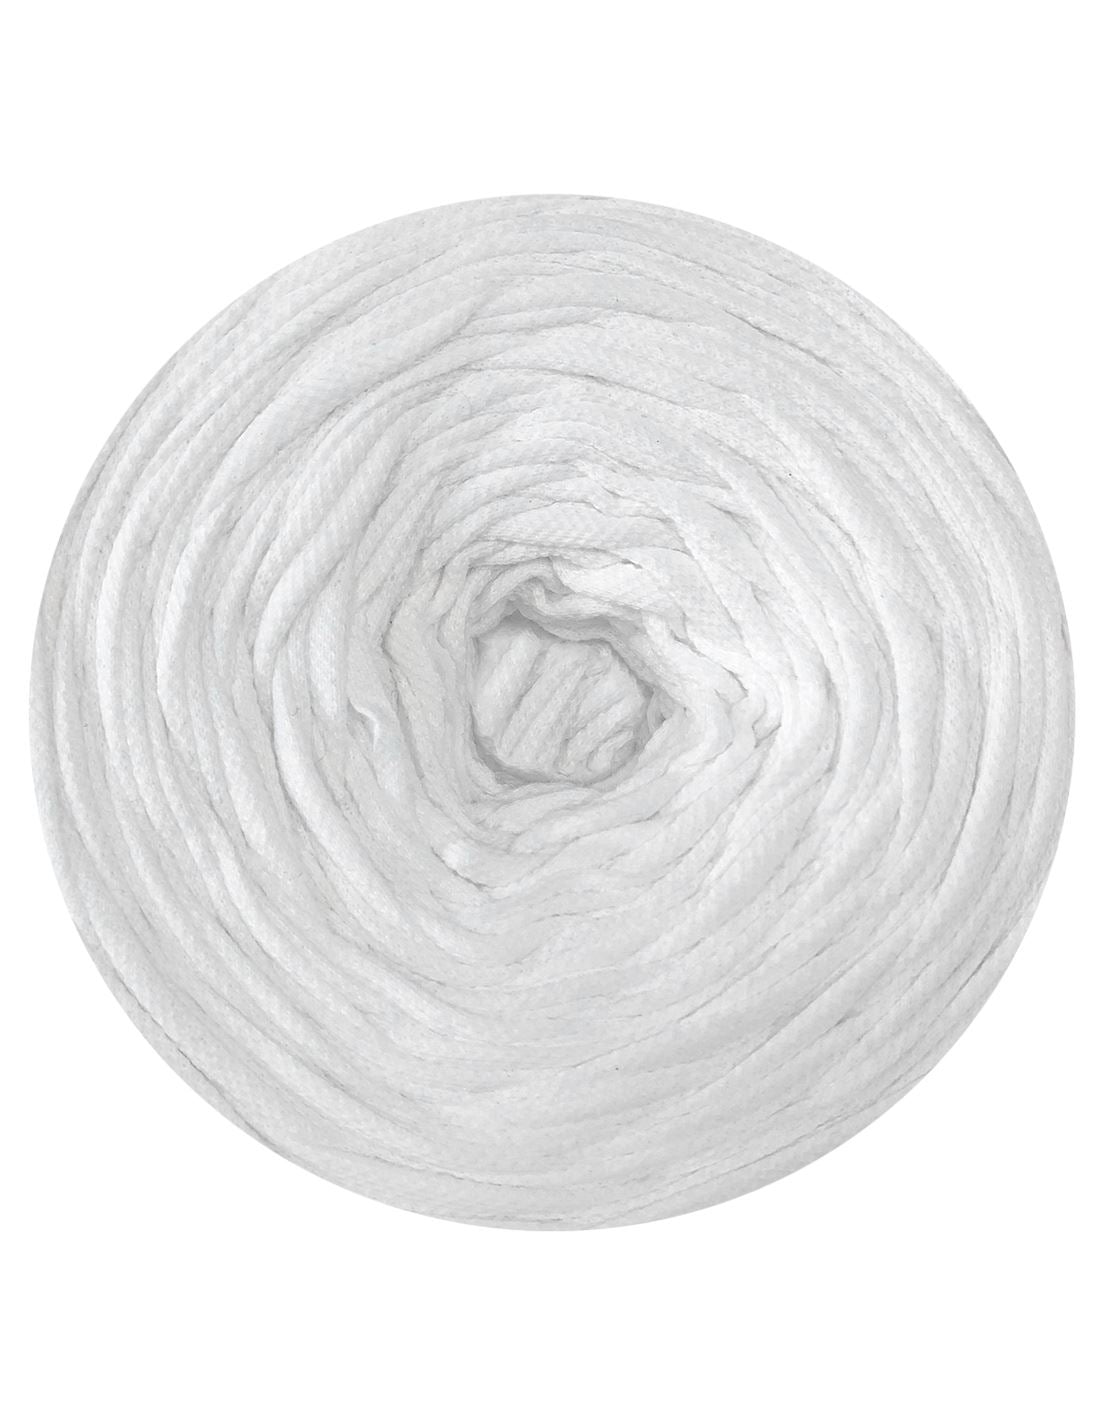 White polo t-shirt yarn by Tek-Tek (100-120m)